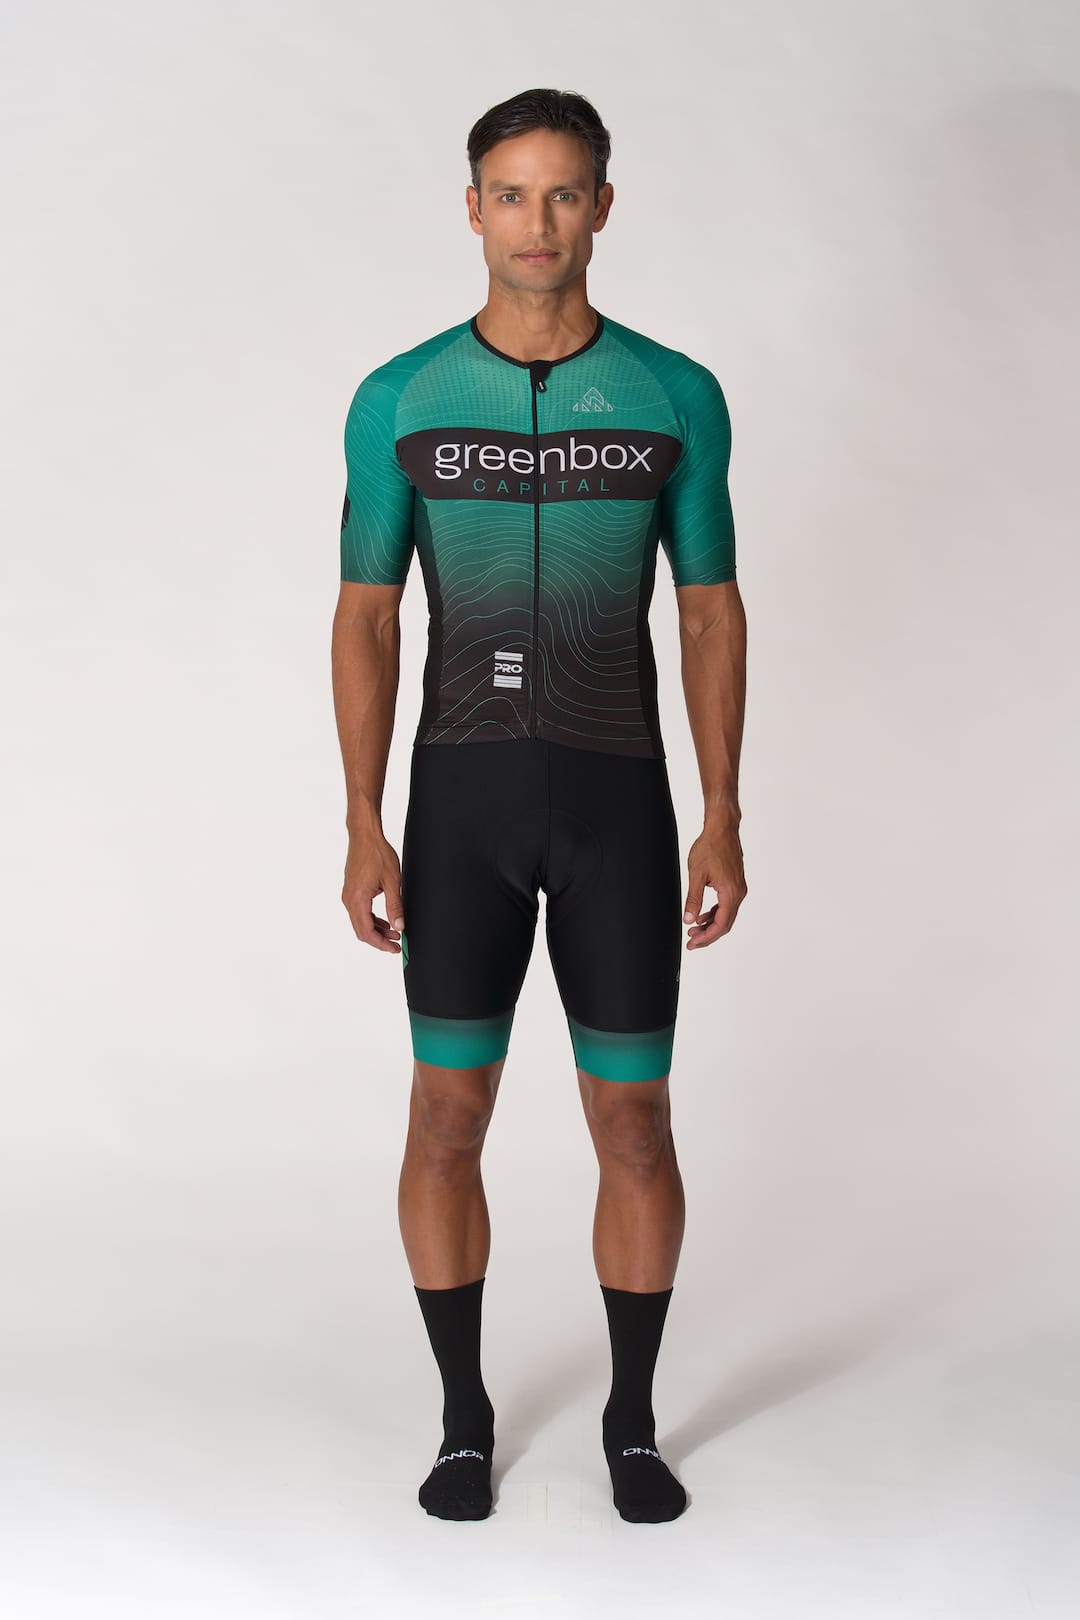 personalized cycling jersey no minimum